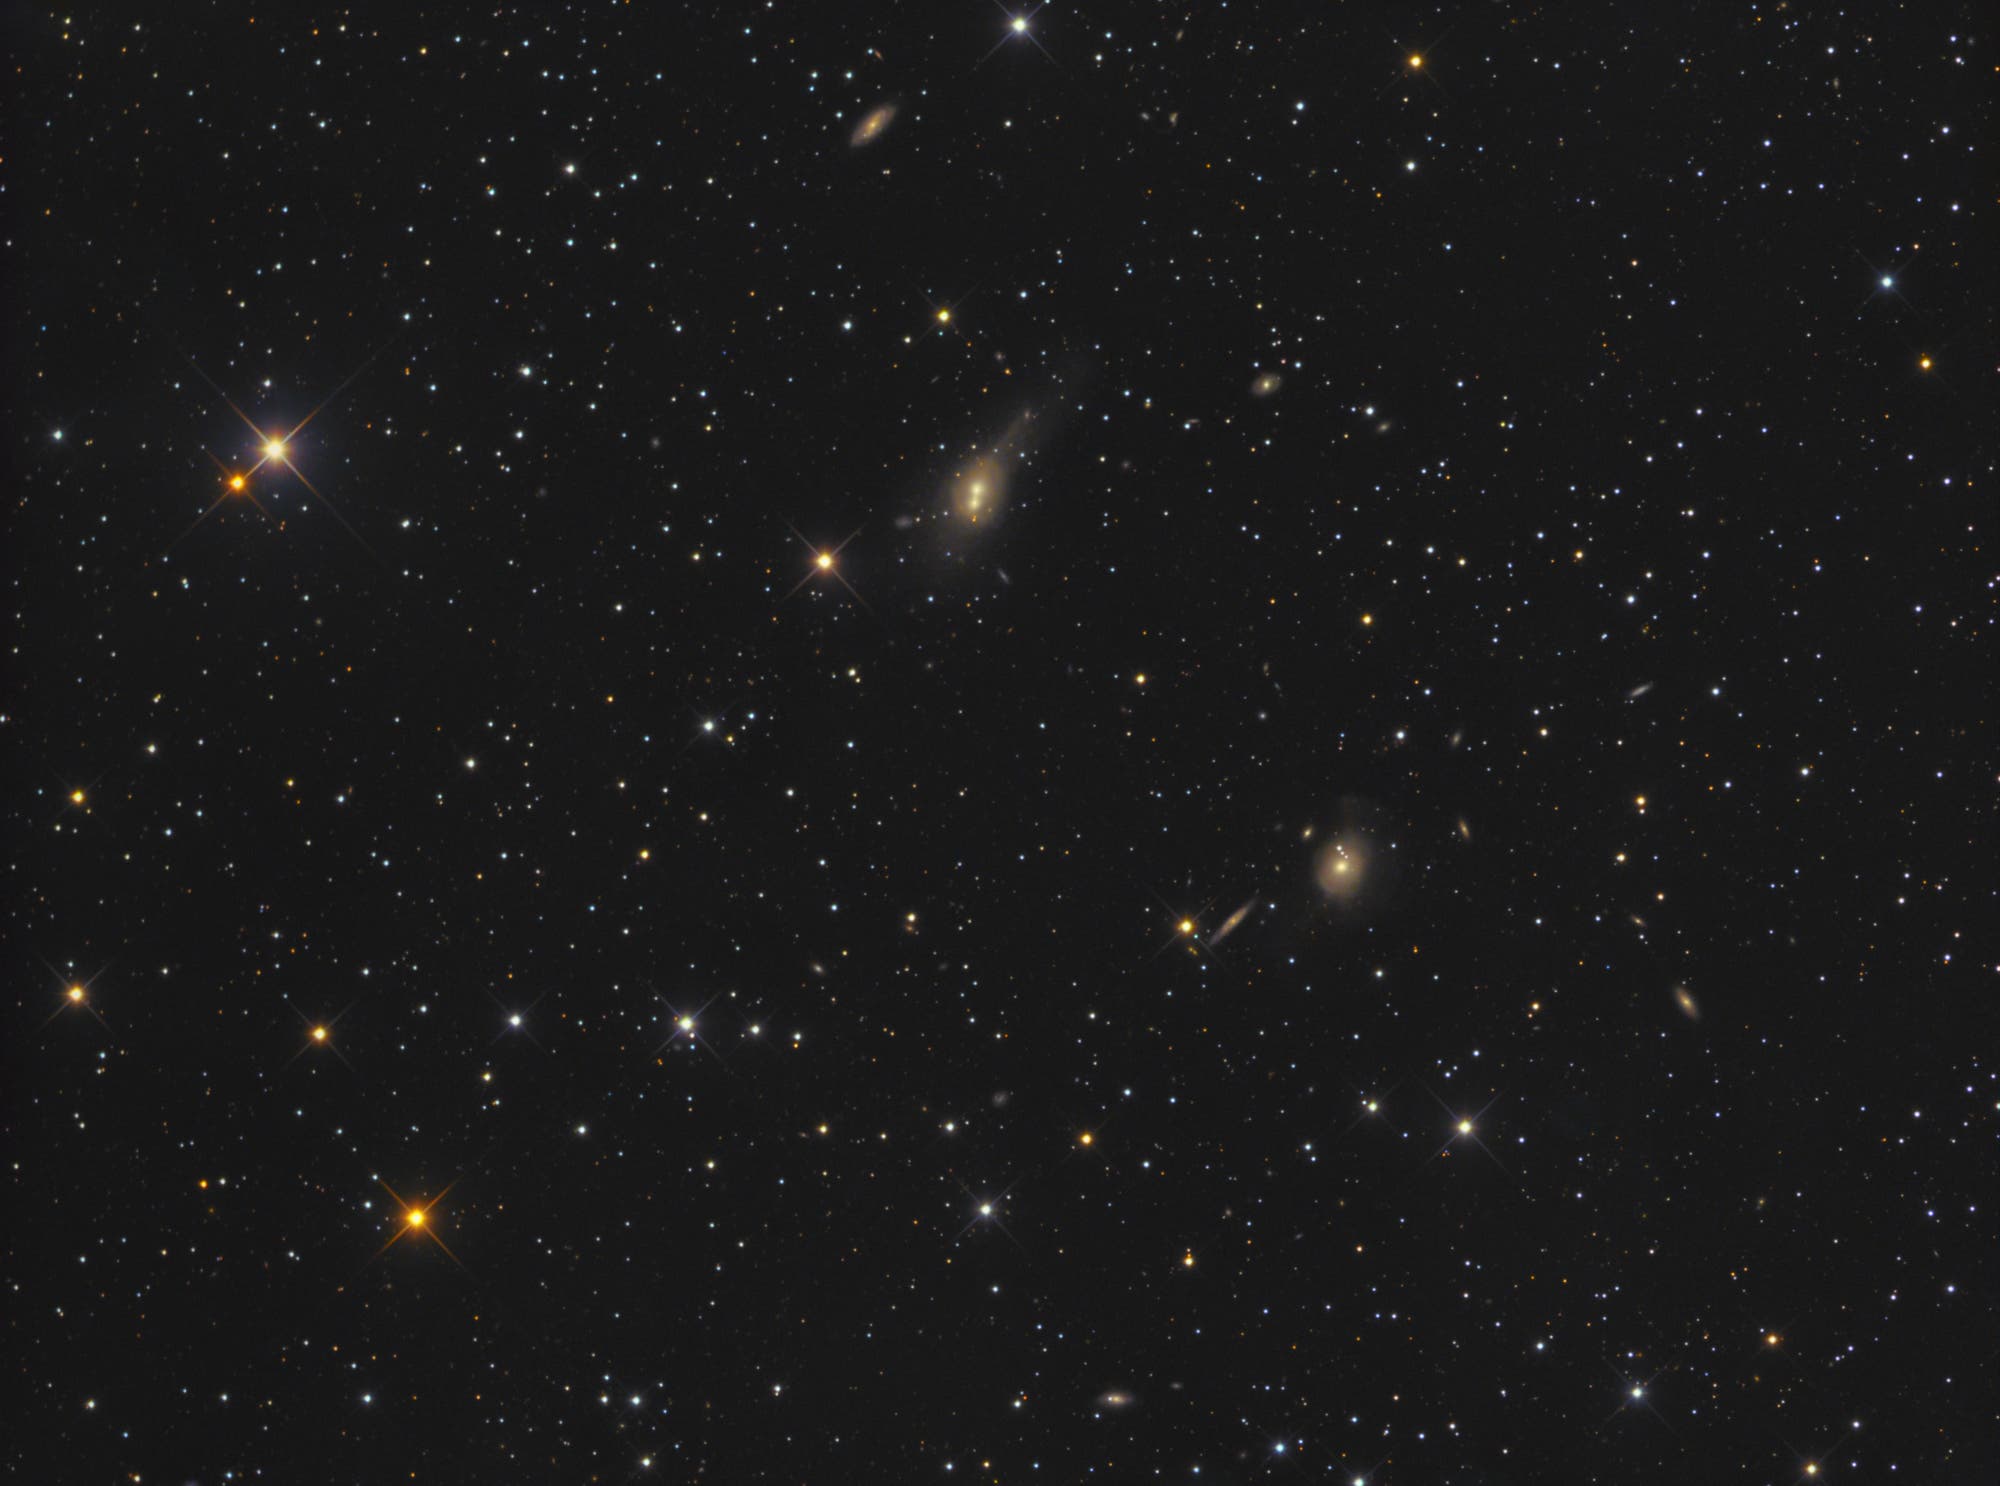 Arp 166 (NGC750/751)